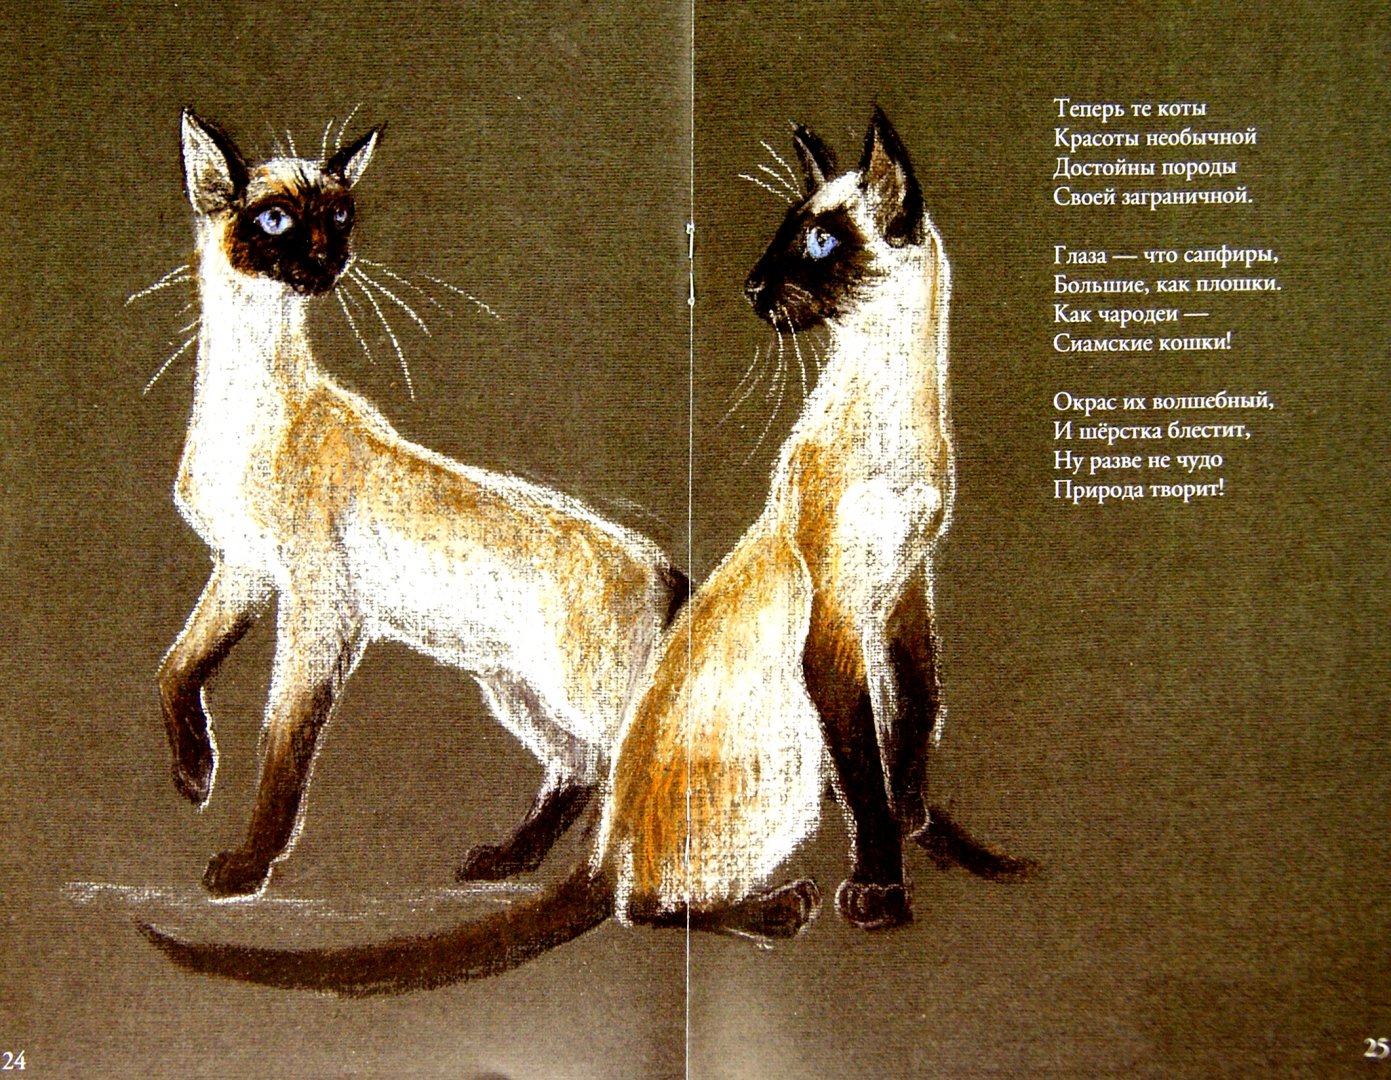 Иллюстрация 1 из 3 для Коты бывают разные - Светлана Белорукова | Лабиринт - книги. Источник: Лабиринт